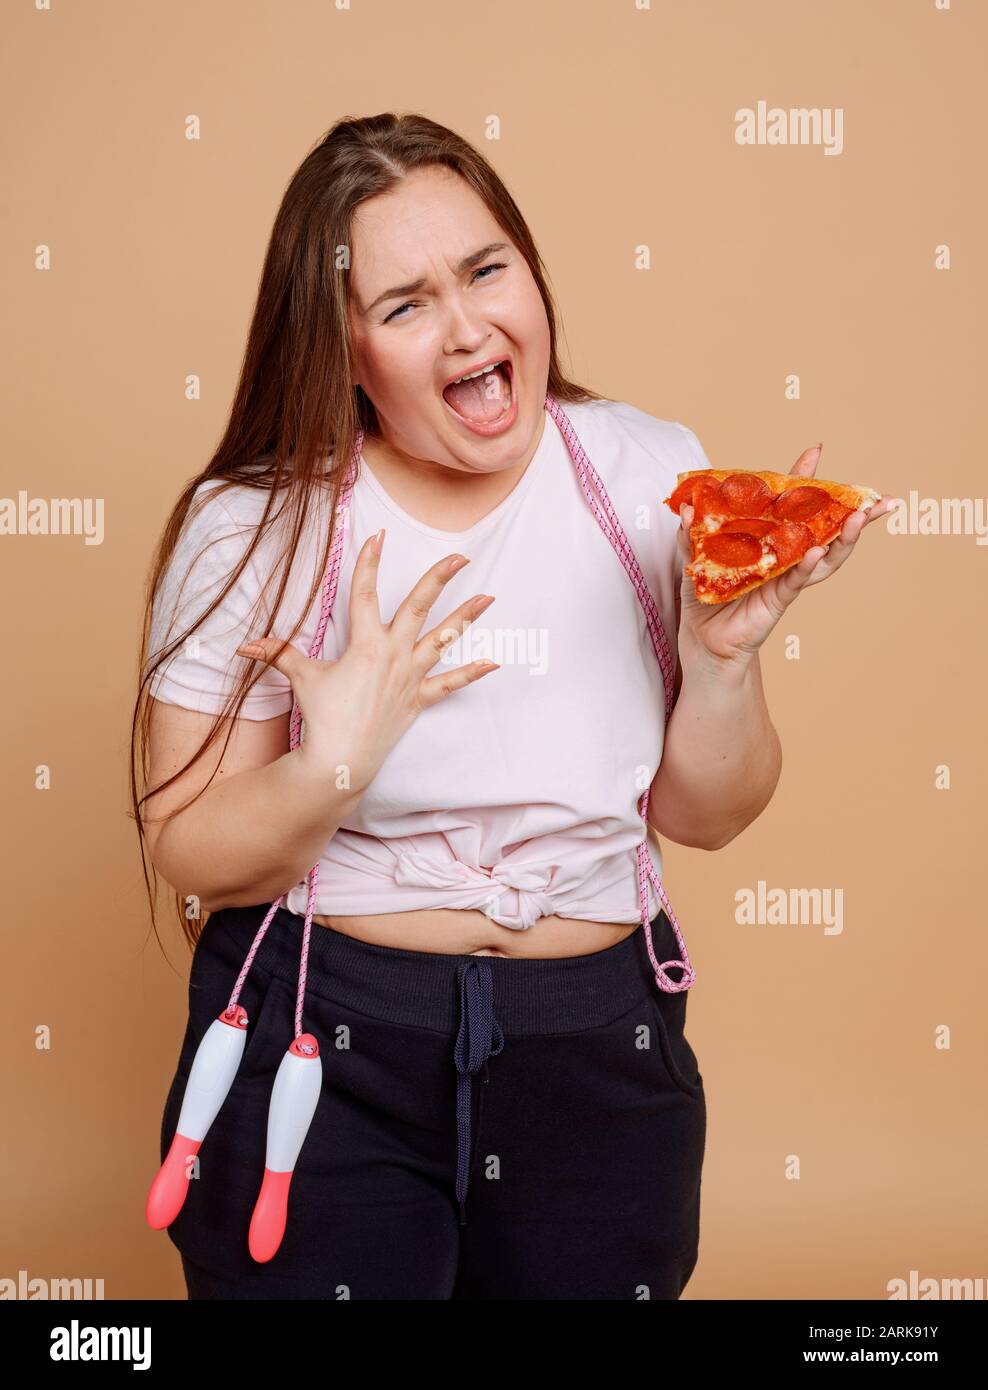 Übergewichtige Frau weinte, weil sie Pizza will Stockfoto